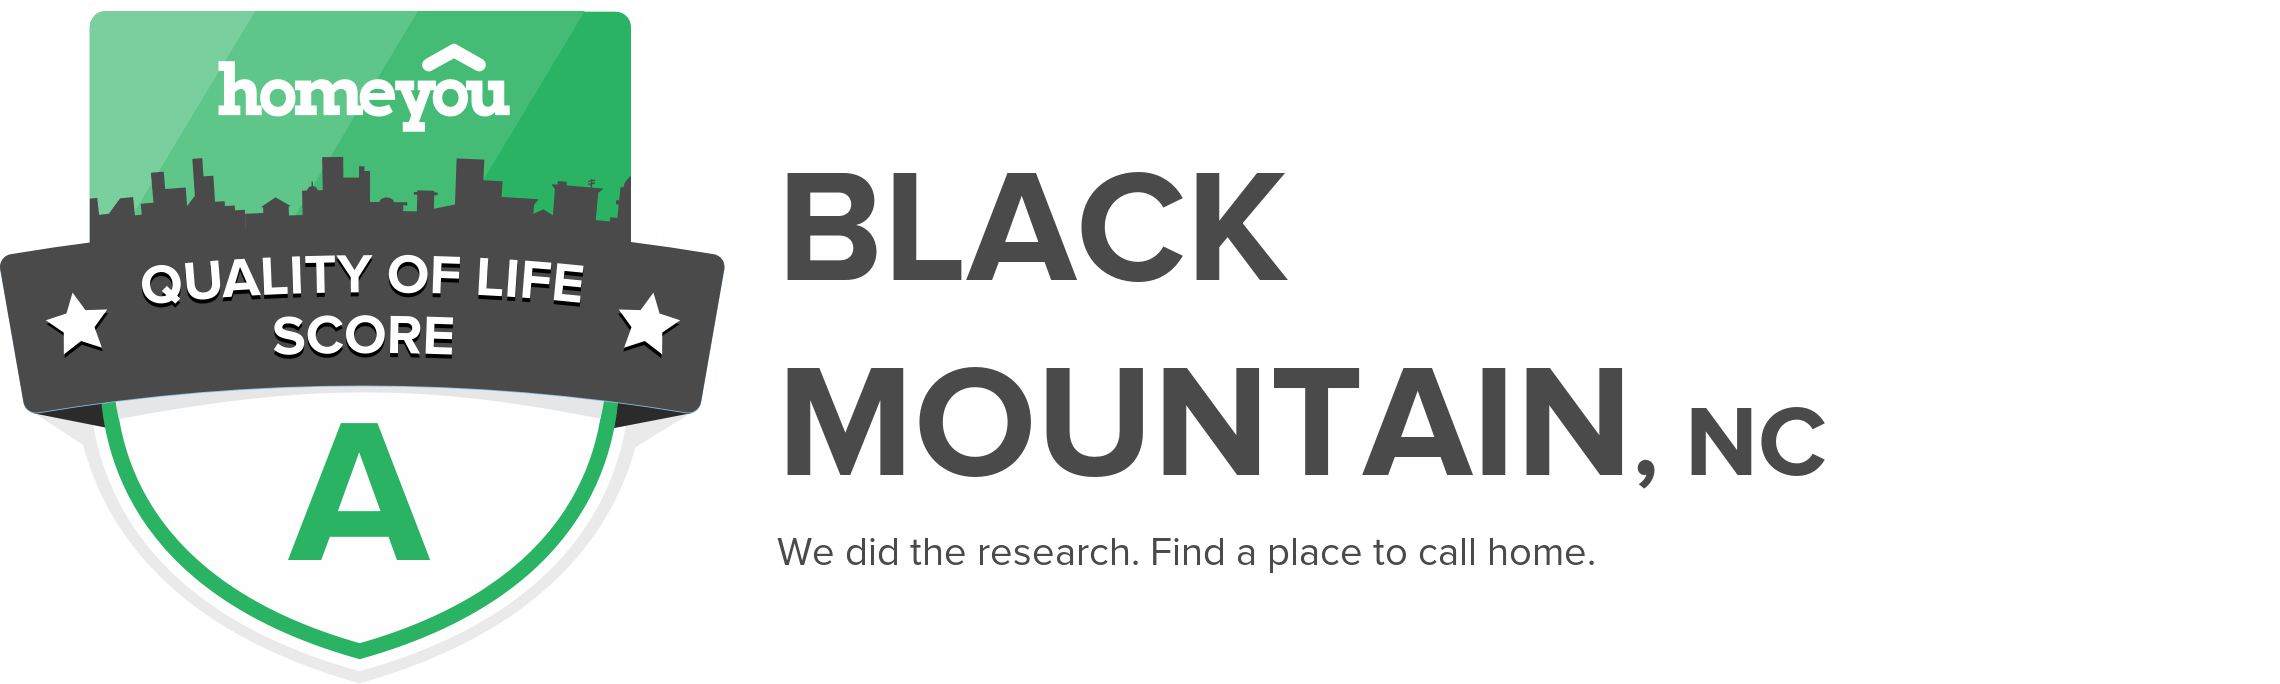 Black Mountain, NC